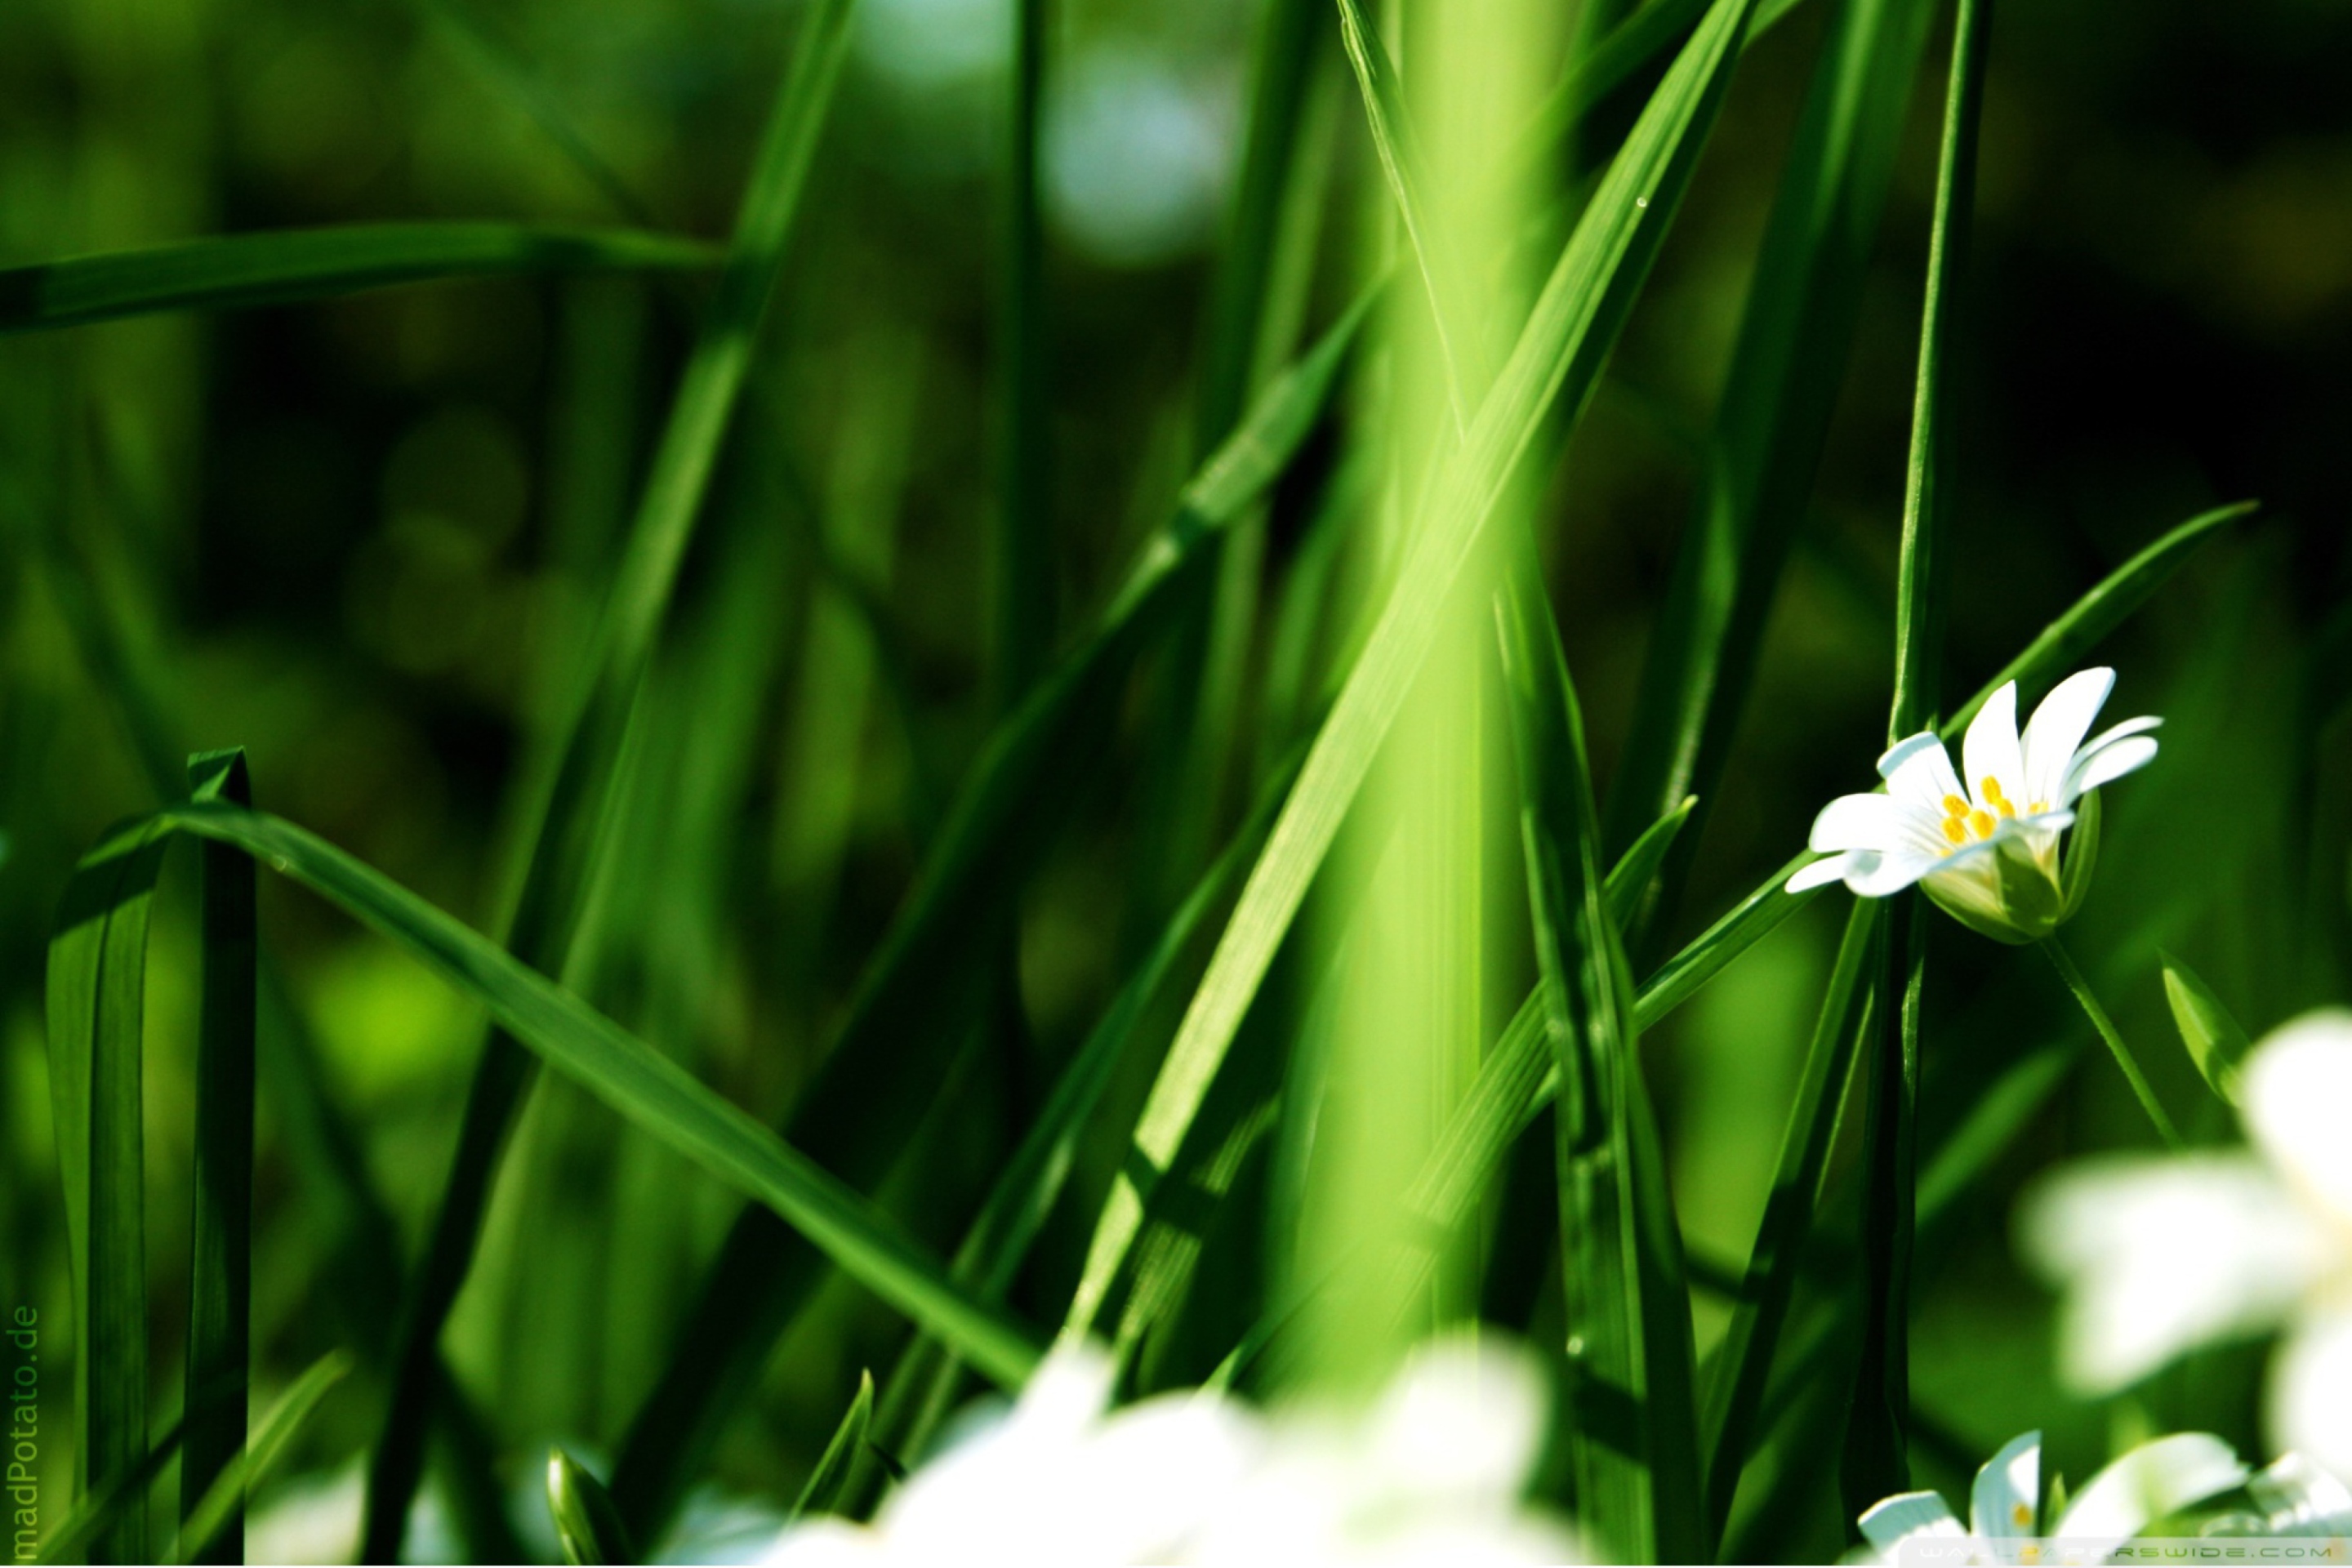 Обои Grass And White Flowers 2880x1920